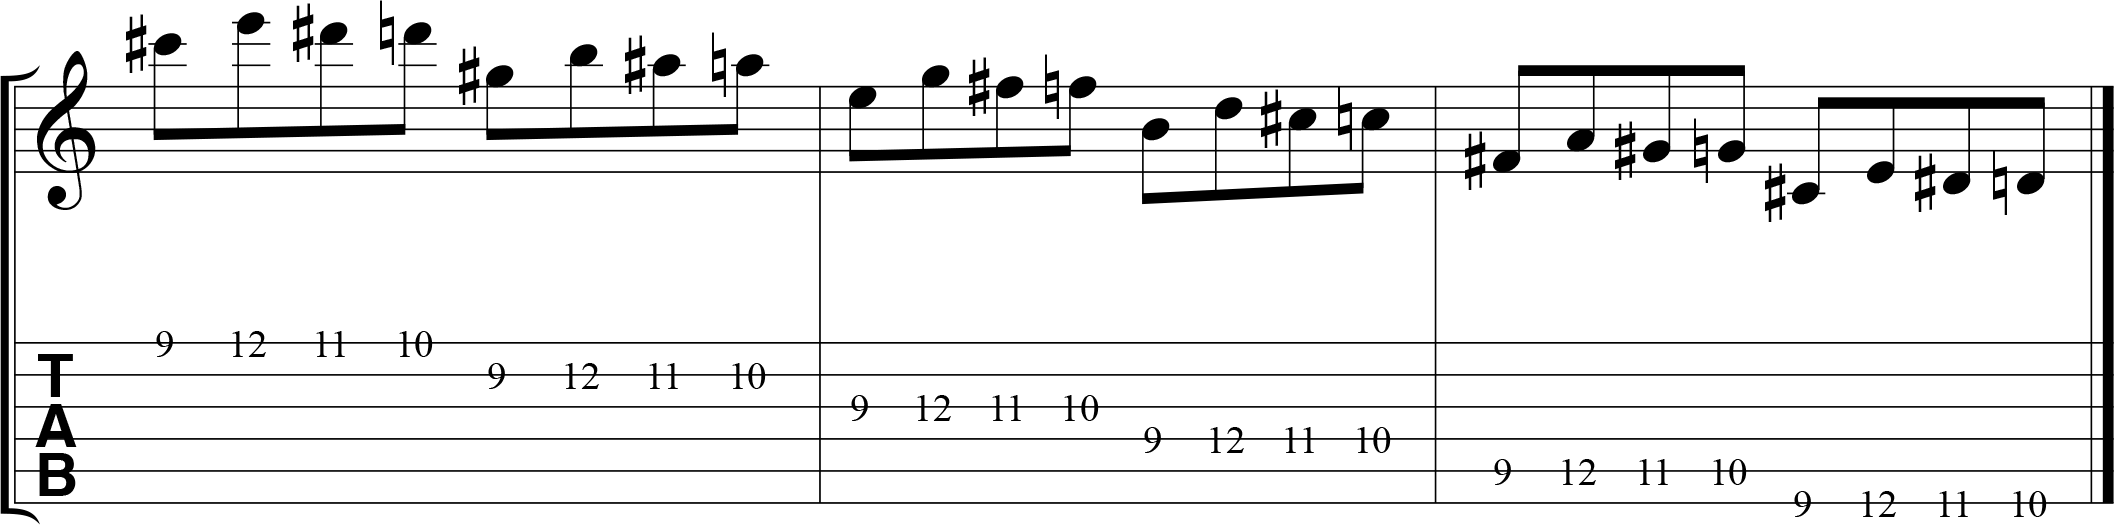 Chromatic alternate picking exercise for guitar, 1432, descending.